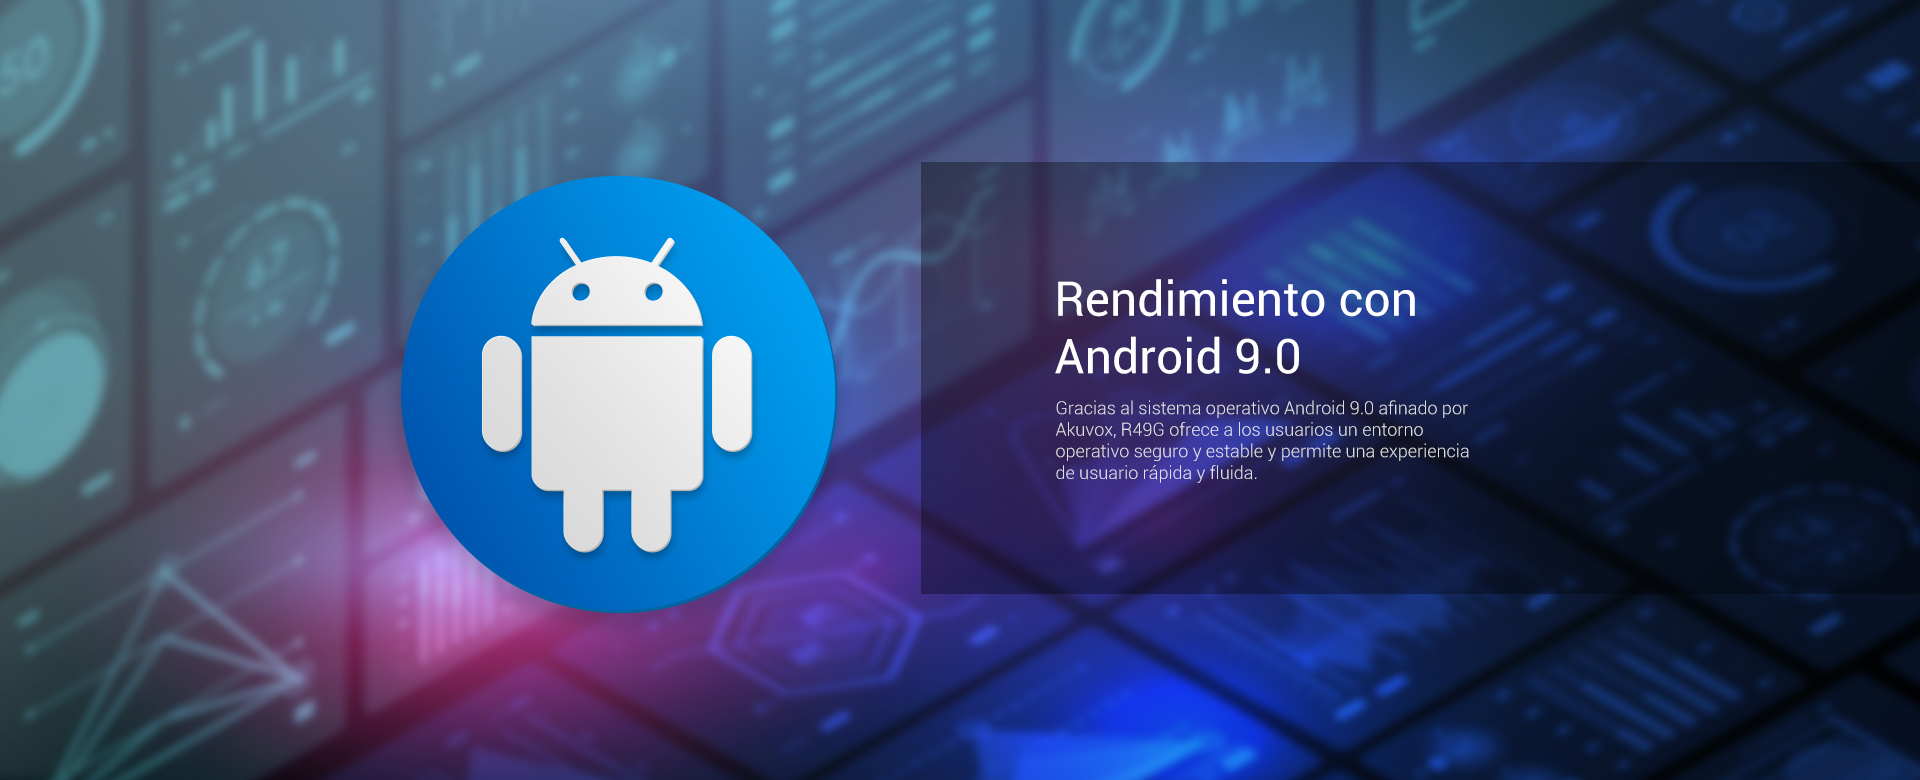 Pantalla R49G - Viene equipado con Android 9.0 para una experiencia de usuario rápida y fluida